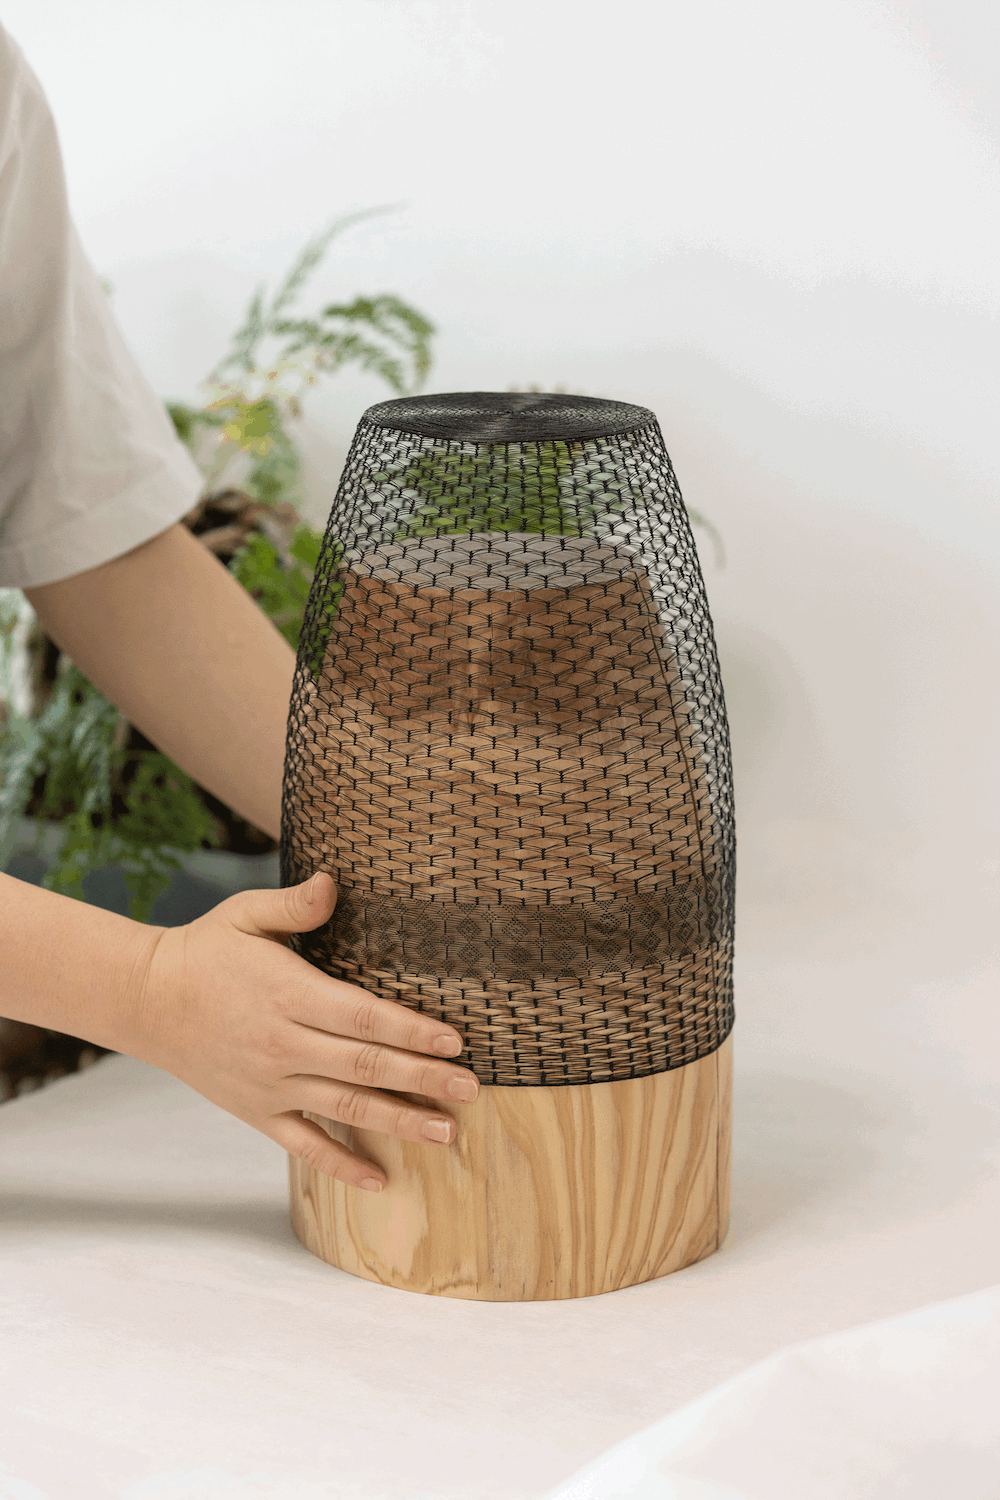 Netting Baskets by Dahye Jeong 15